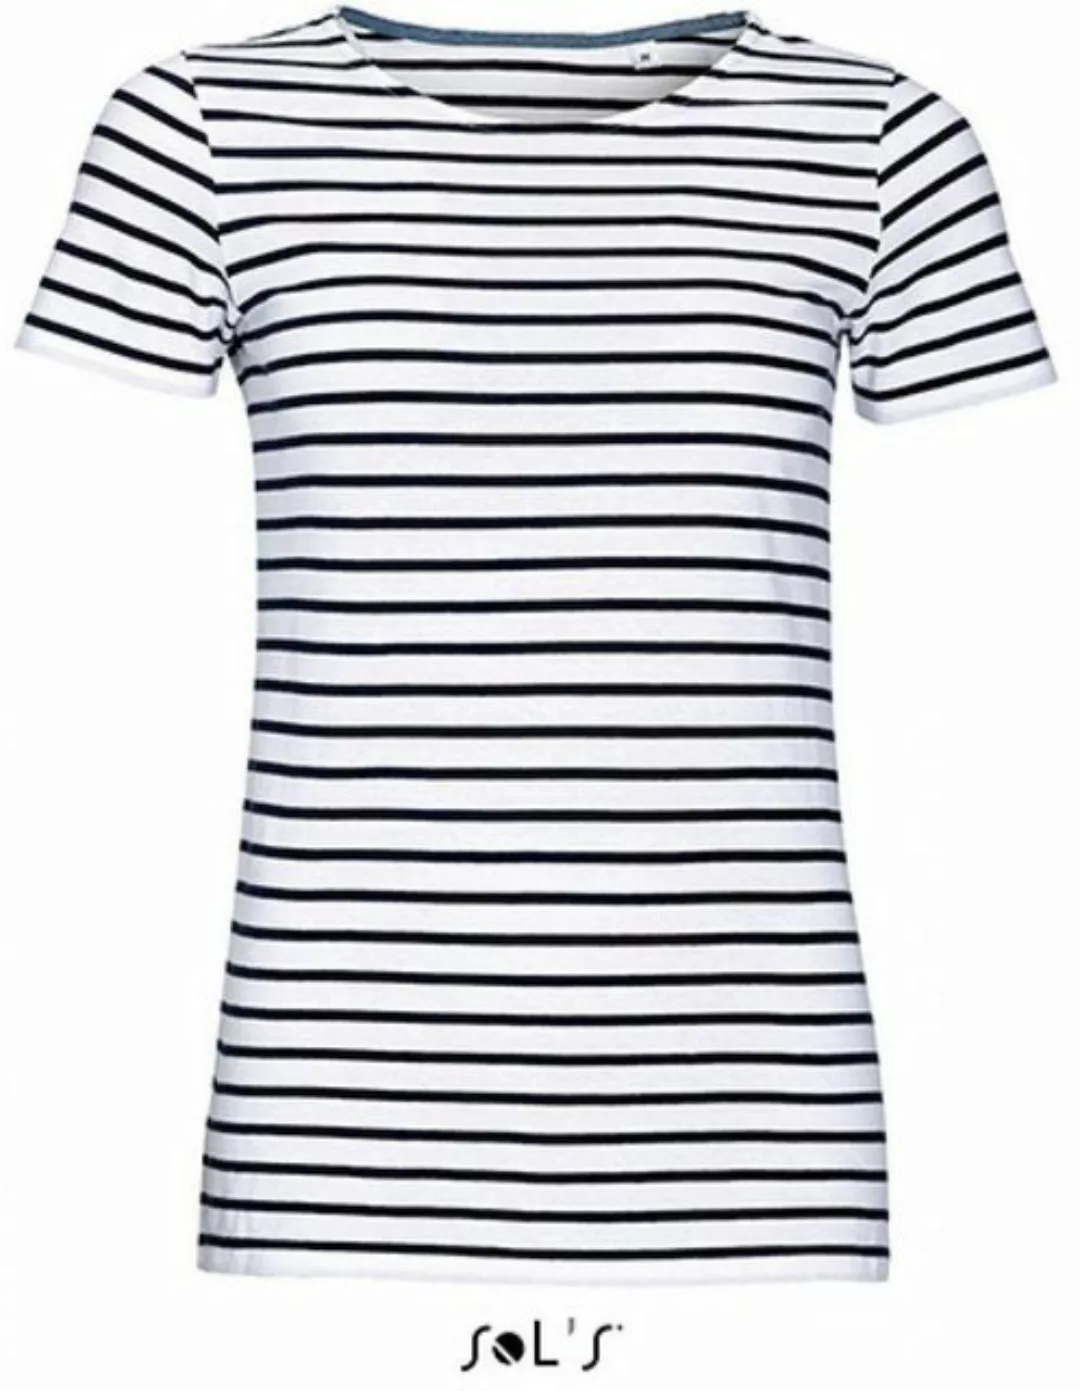 SOLS Rundhalsshirt Damen Striped T-Shirt modisch gestreift günstig online kaufen